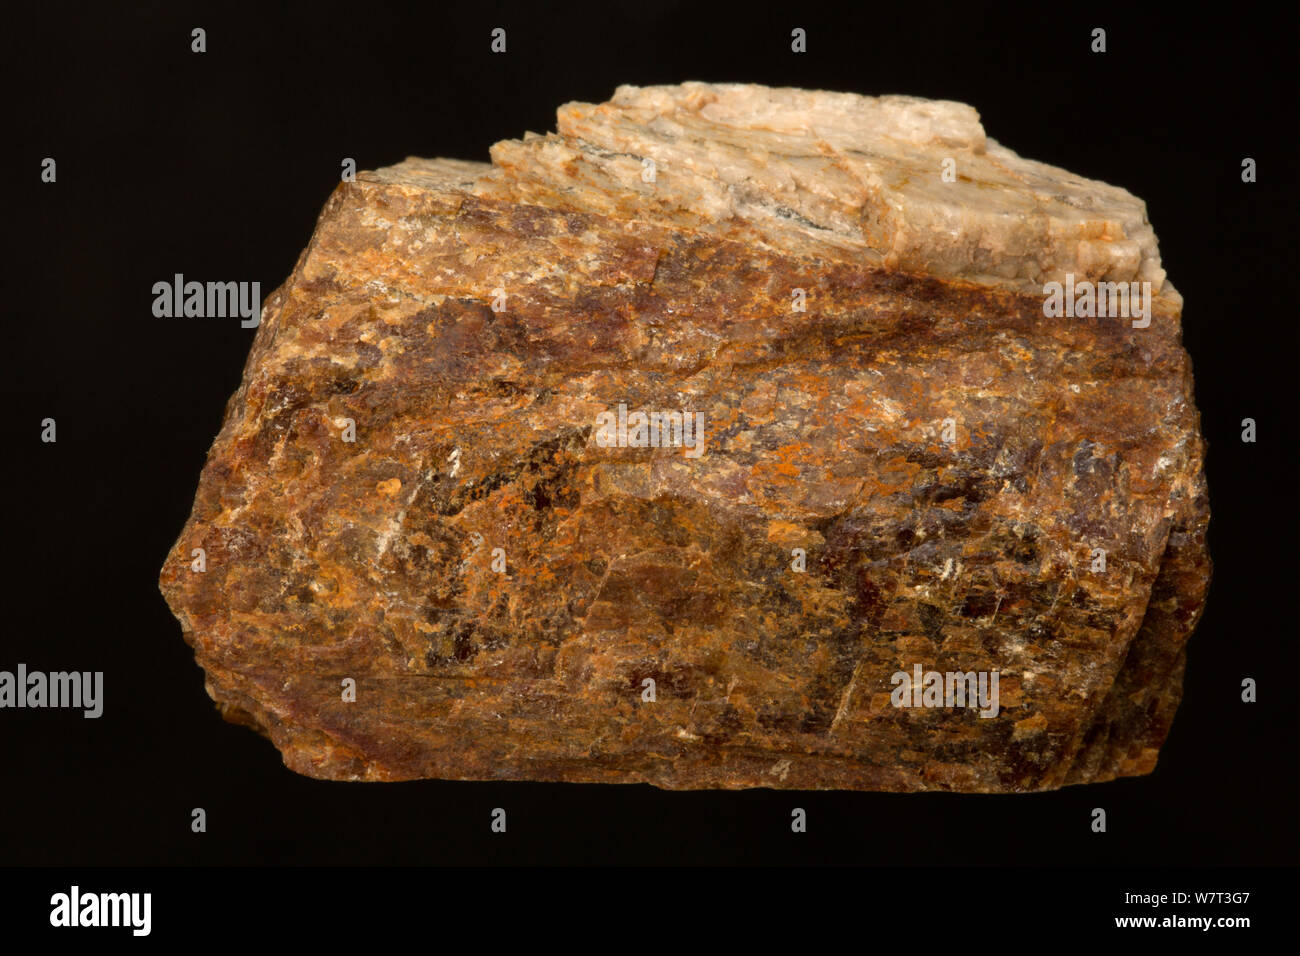 Minerali metalliferi immagini e fotografie stock ad alta risoluzione - Alamy